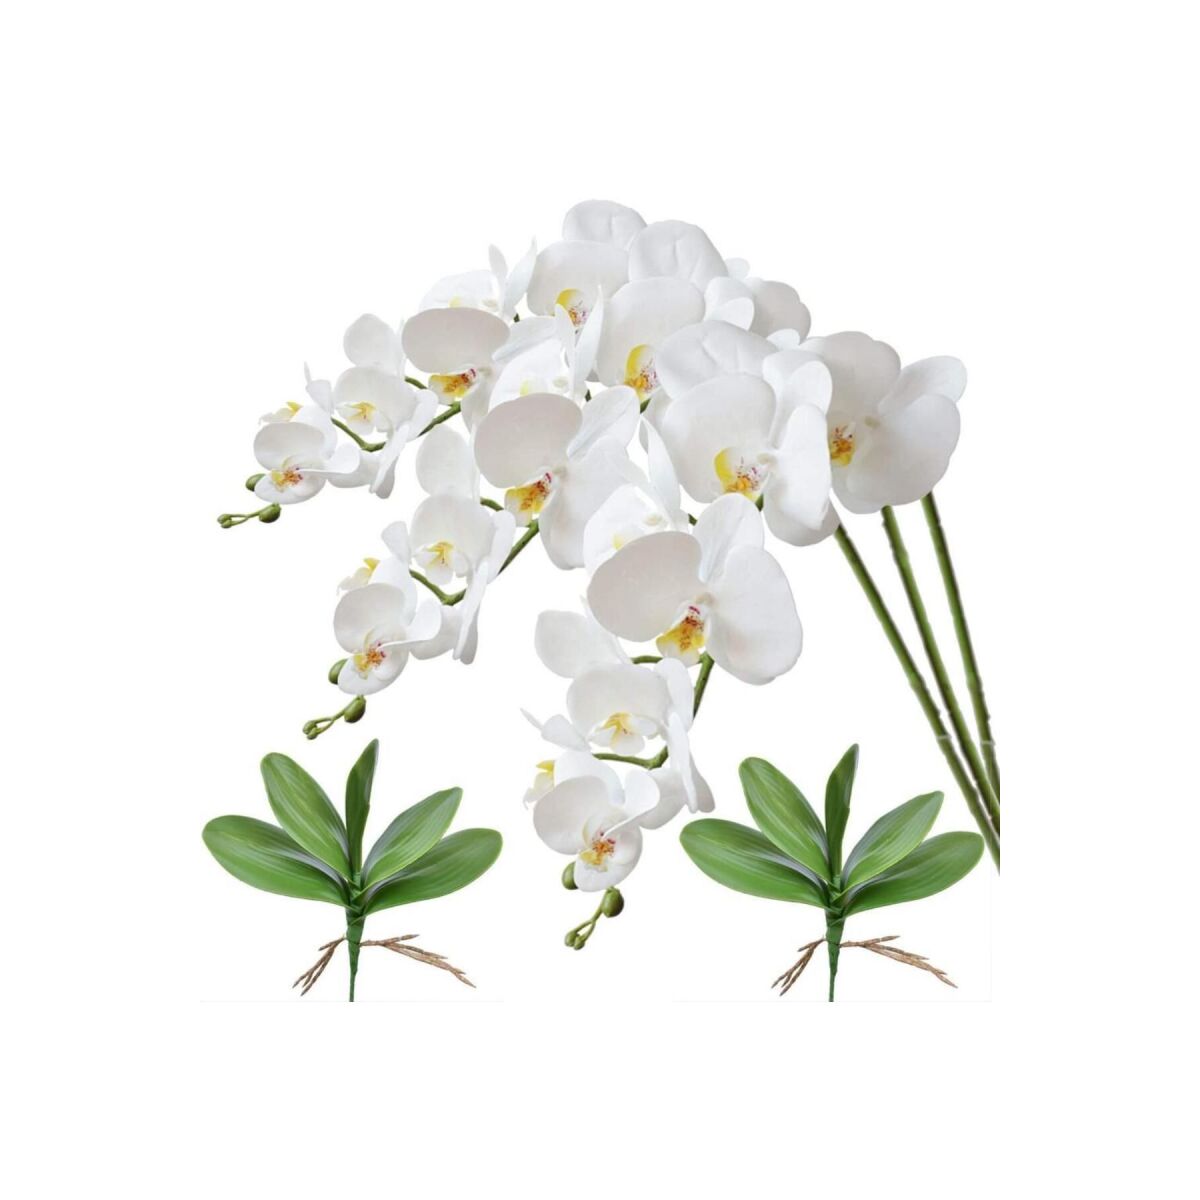 3Lü Set Yapay Çiçek Islak Orkide Ve 2 Adet Orkide Yaprağı Gerçeksi Doku Uzun Dal 90Cm